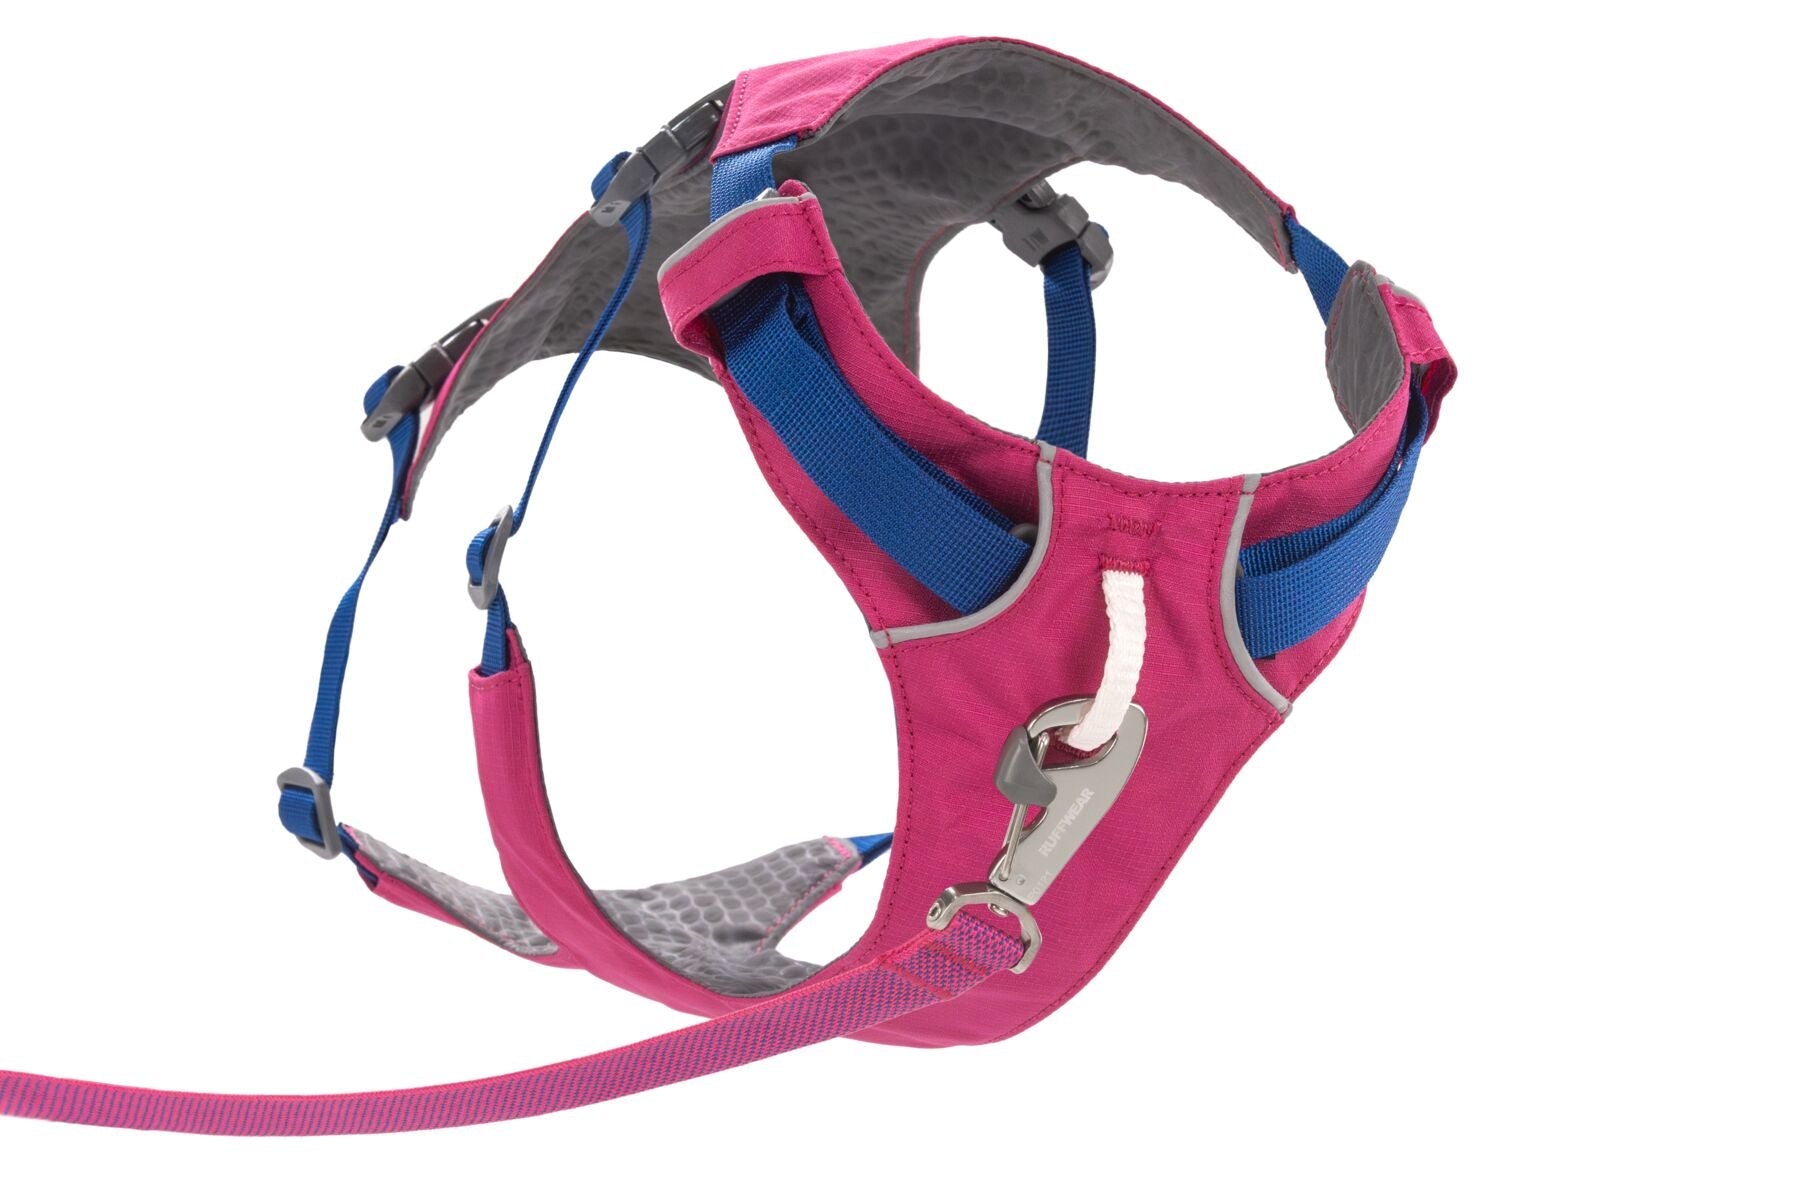 Flagline Harness® Pechera Multiusos en Rosa Alpino (Alpenglow Pink) de Ruffwear